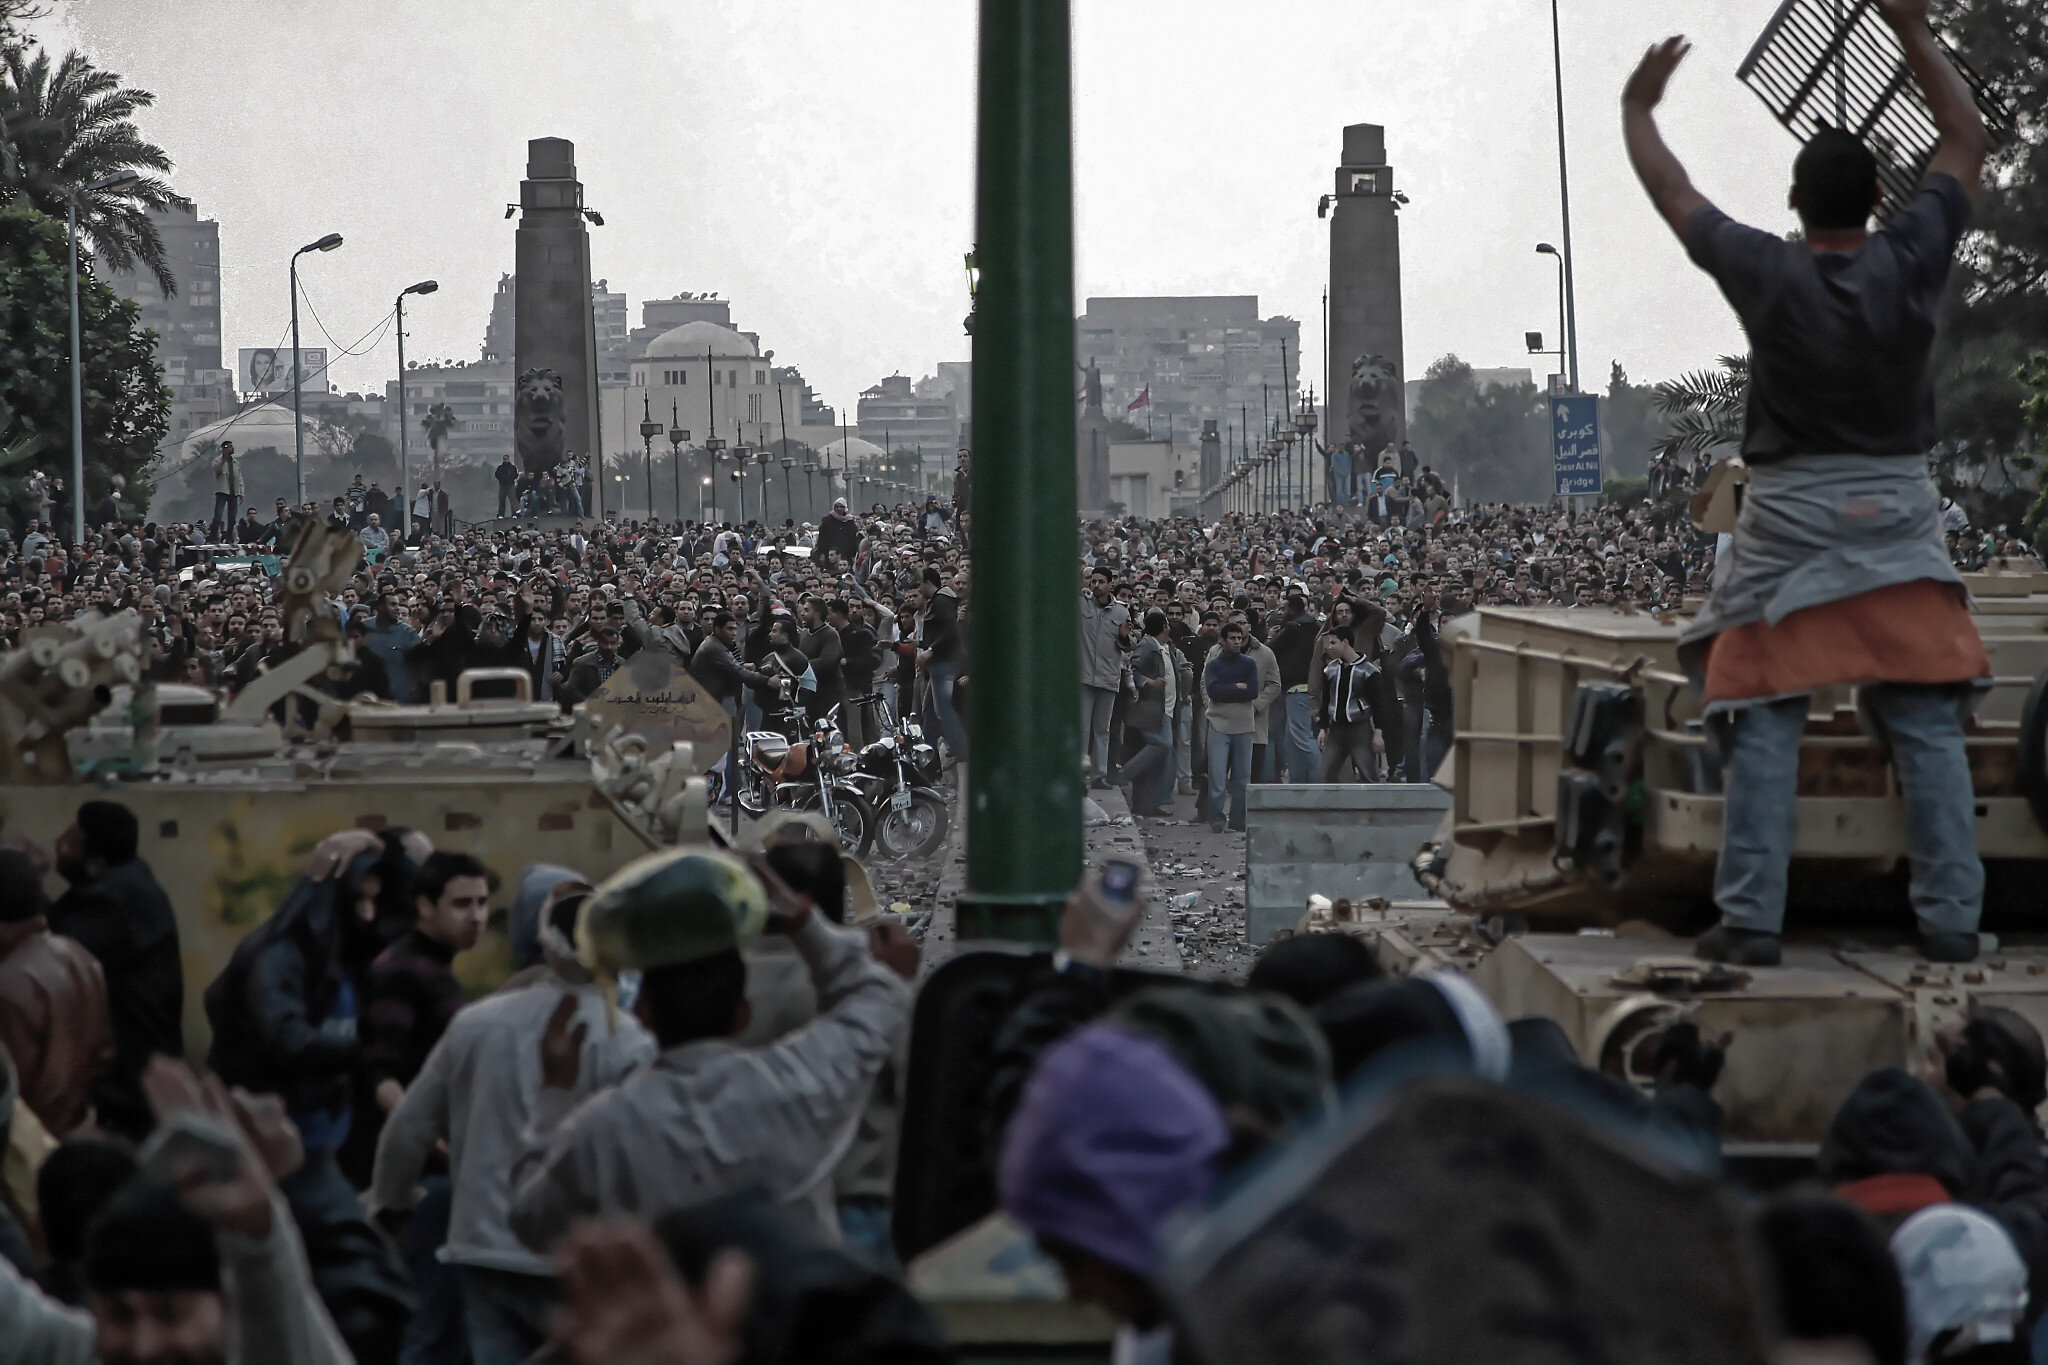 Los defensores de la plaza Tahrir se ponen a cubierto detrás de los tanques mientras los partidarios de Mubarak les lanzan piedras en la entrada de la plaza Qasr el-Nil (todas las fotos por cortesía de Iason Athanasiadis)